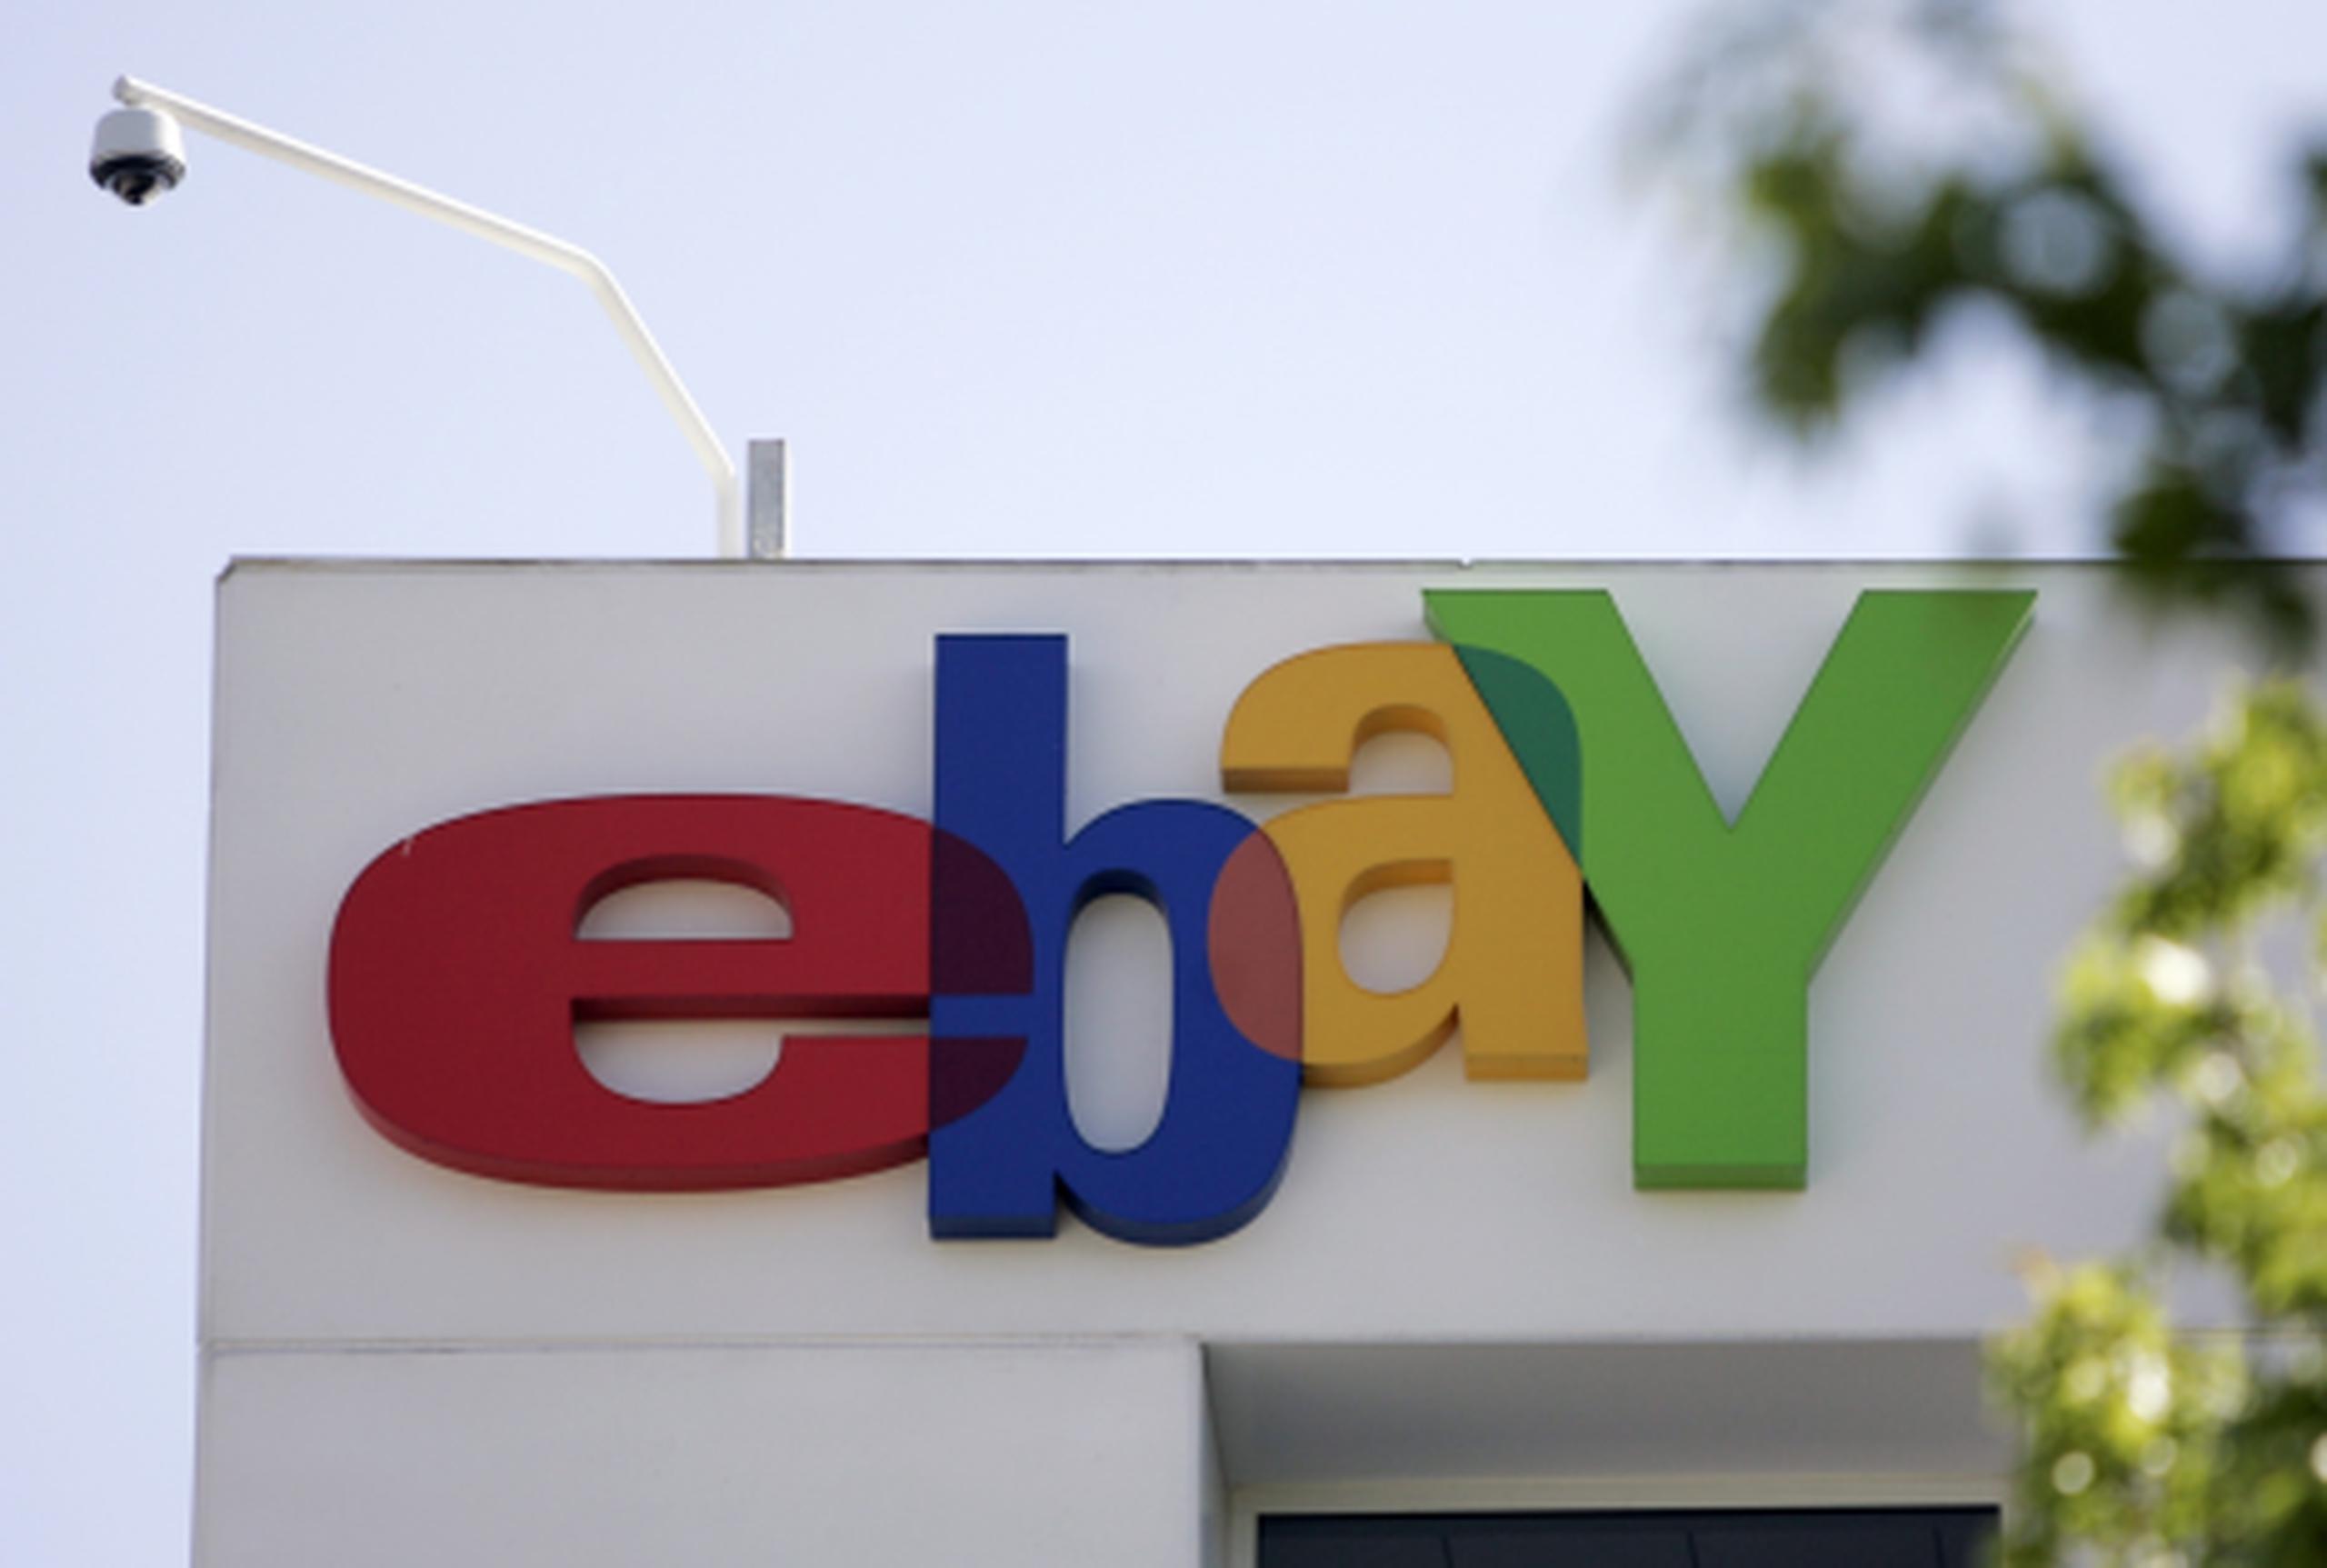 La compañía de compraventa por internet eBay presentó hoy un sitio web renovado. (Archivo)